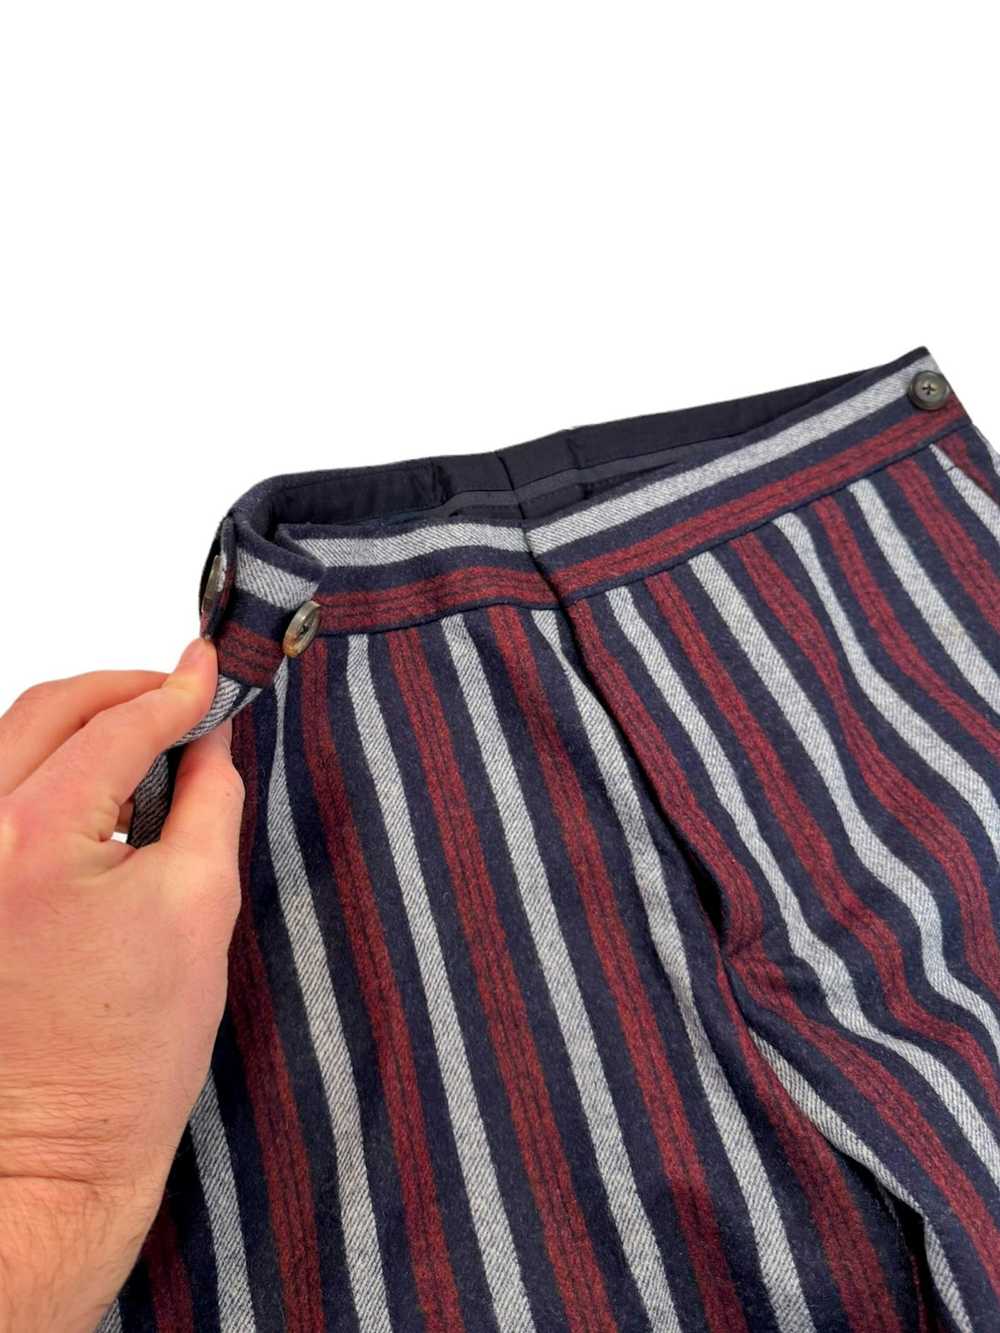 Umit Benan Sample Heavy Wool Stripe Slack - image 2